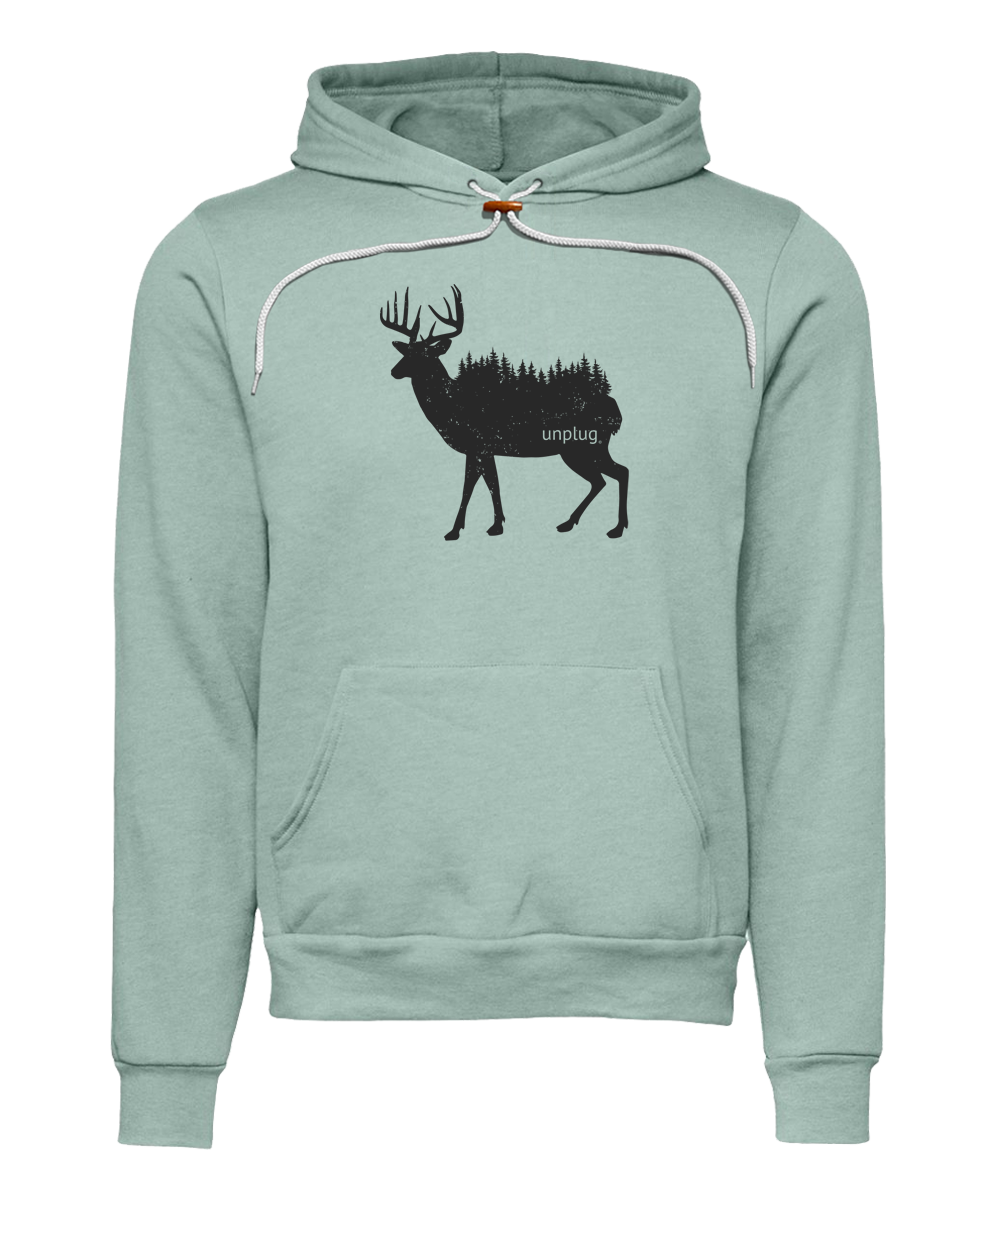 Deer In The Trees Premium Super Soft Hooded Sweatshirt